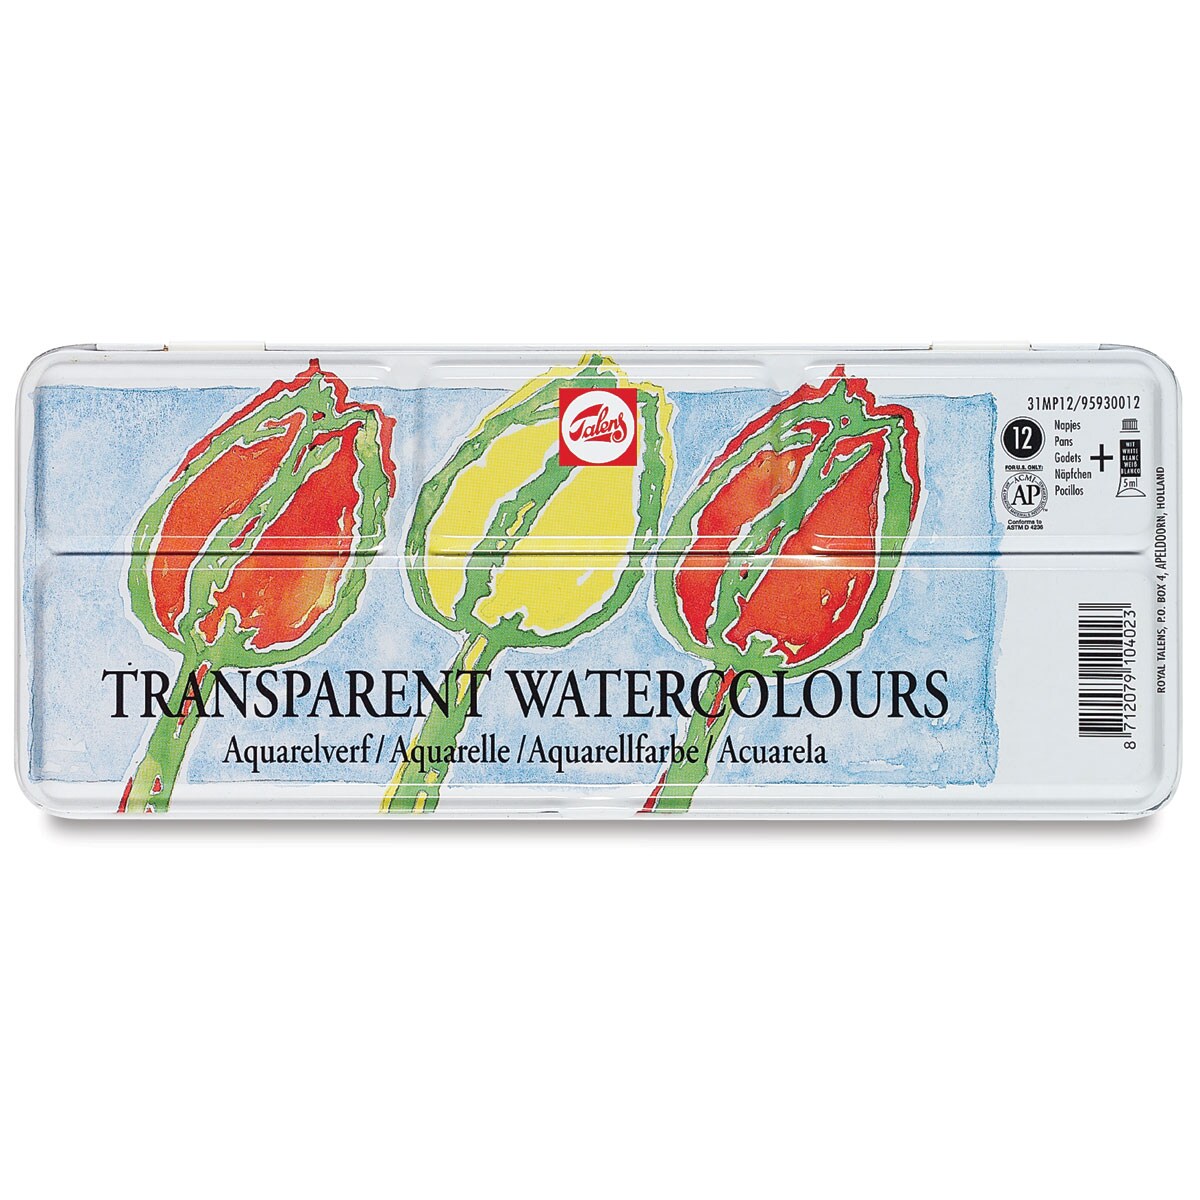 Talens Watercolor Pans - Transparent, Set of 12 Colors, Pan